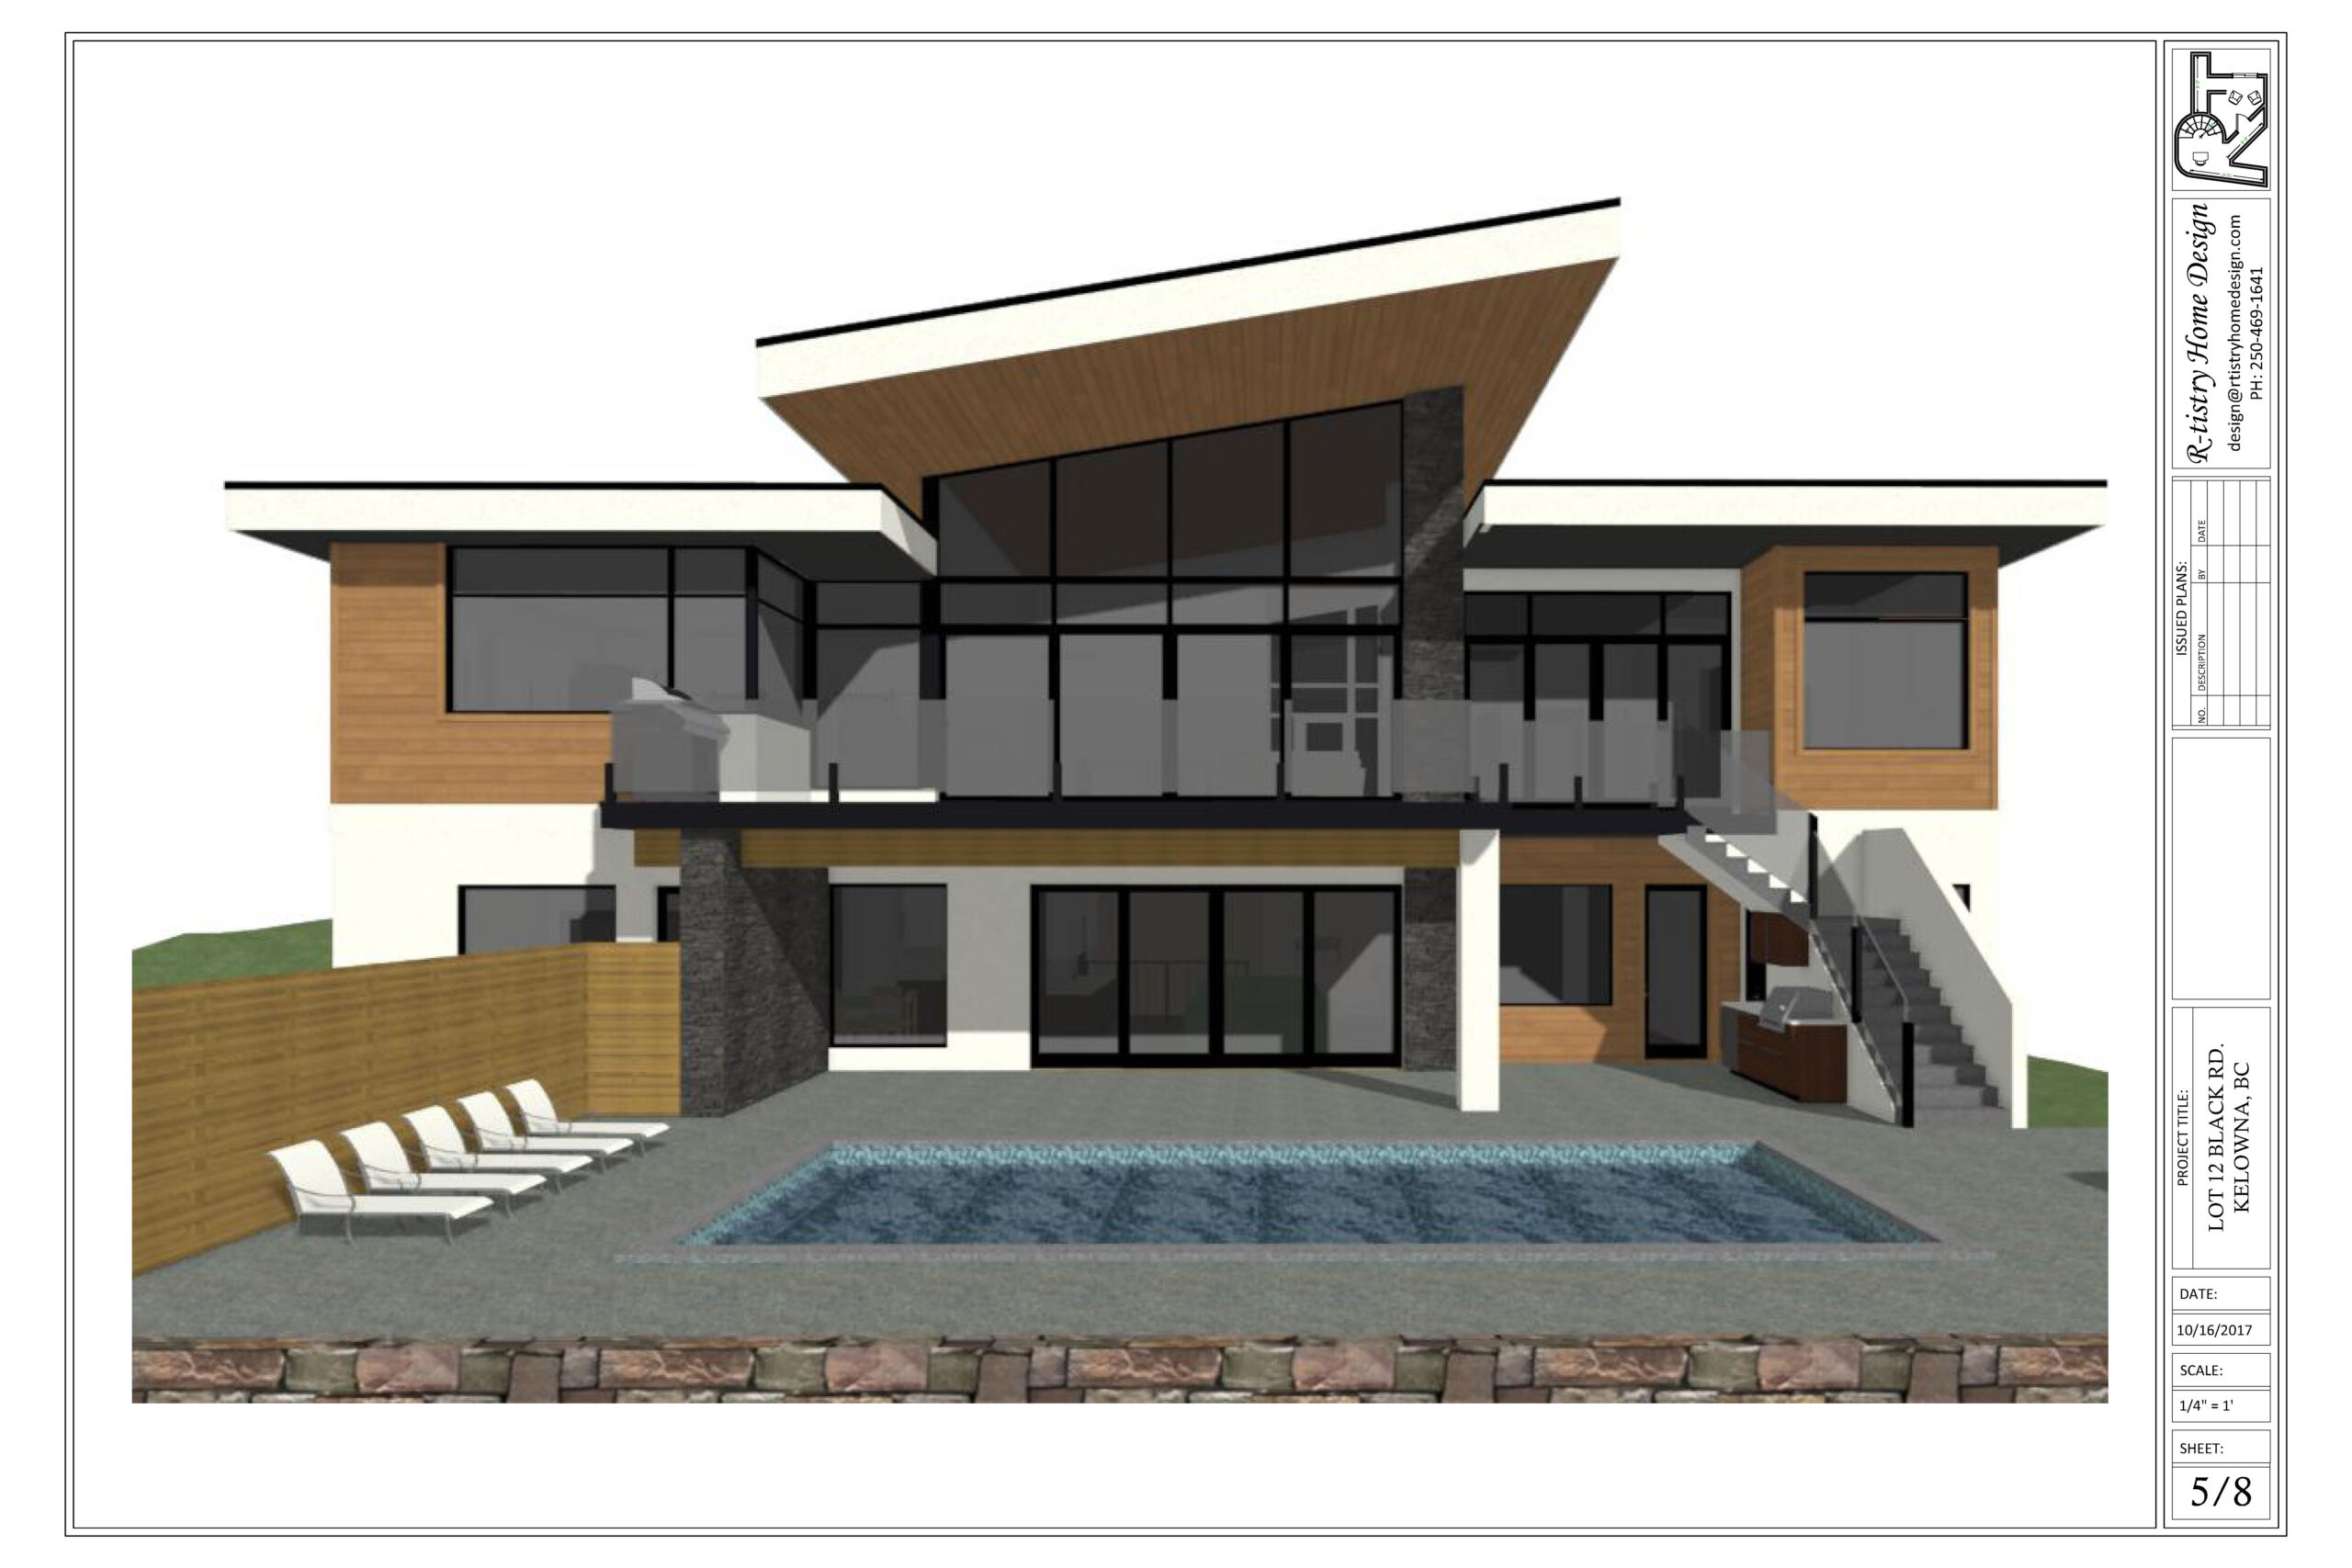 Pinot Noir Elevations custom home rendering